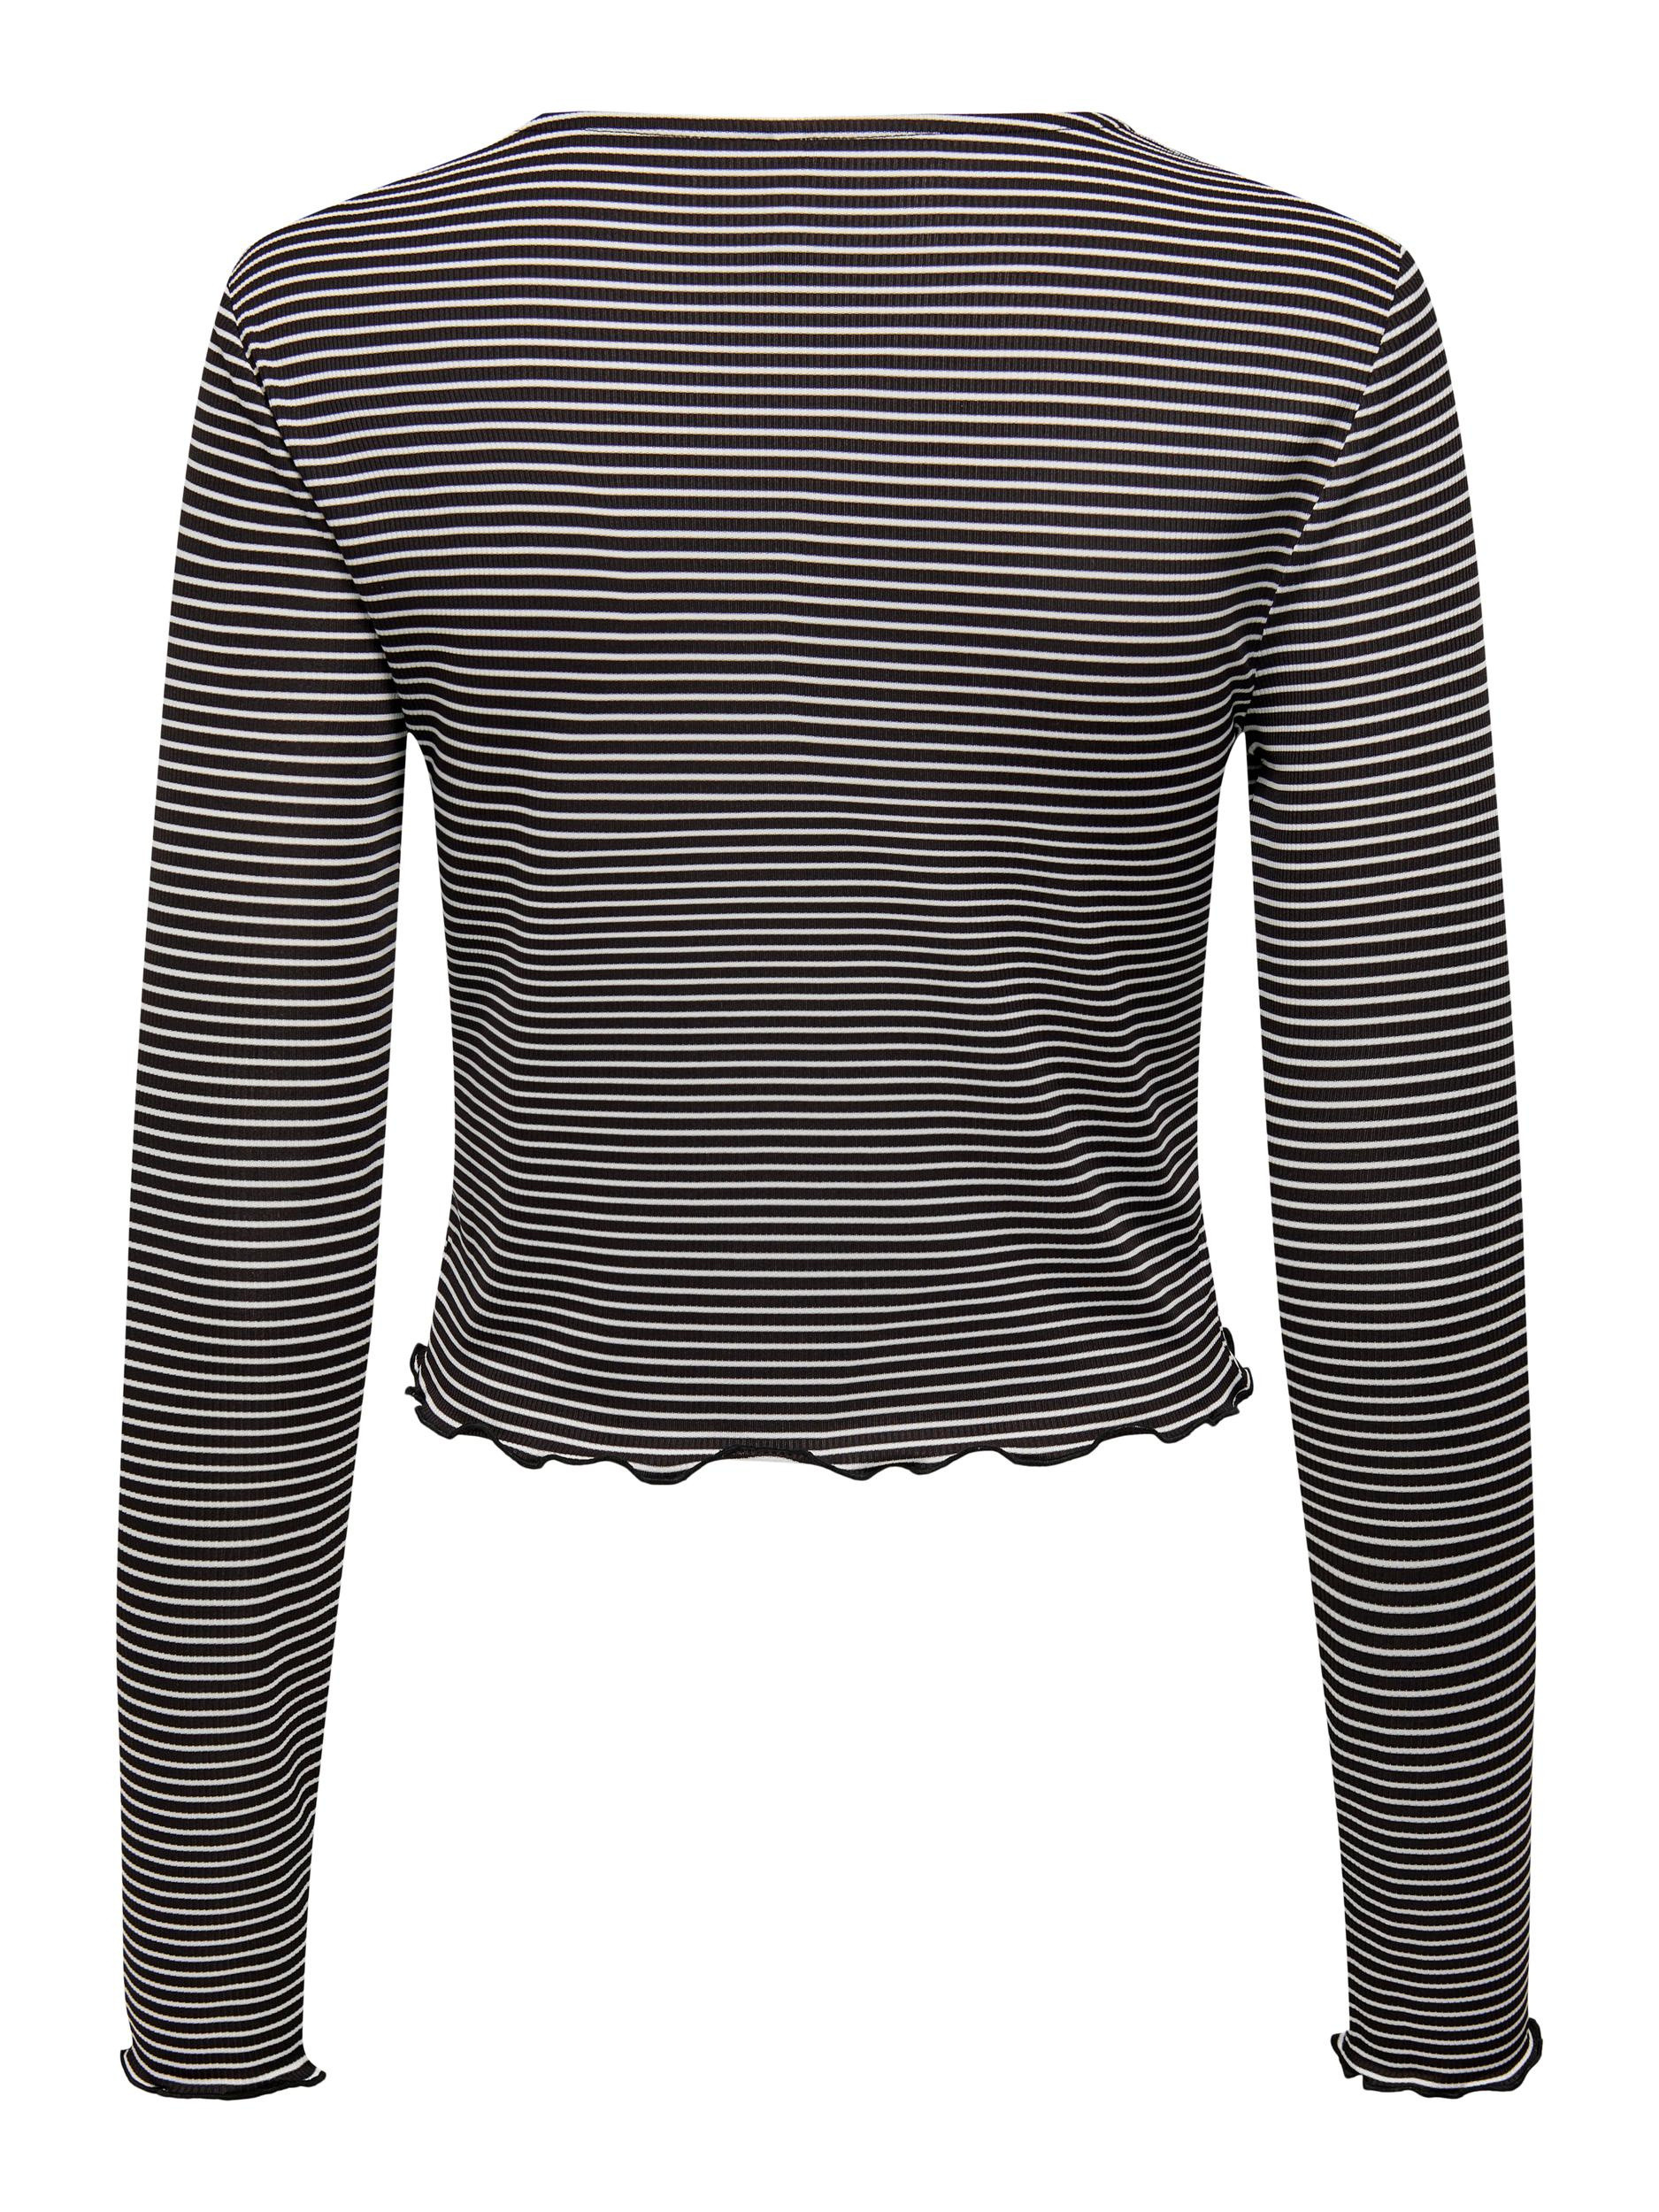 Only - Regular fit striped top, Black, large image number 1